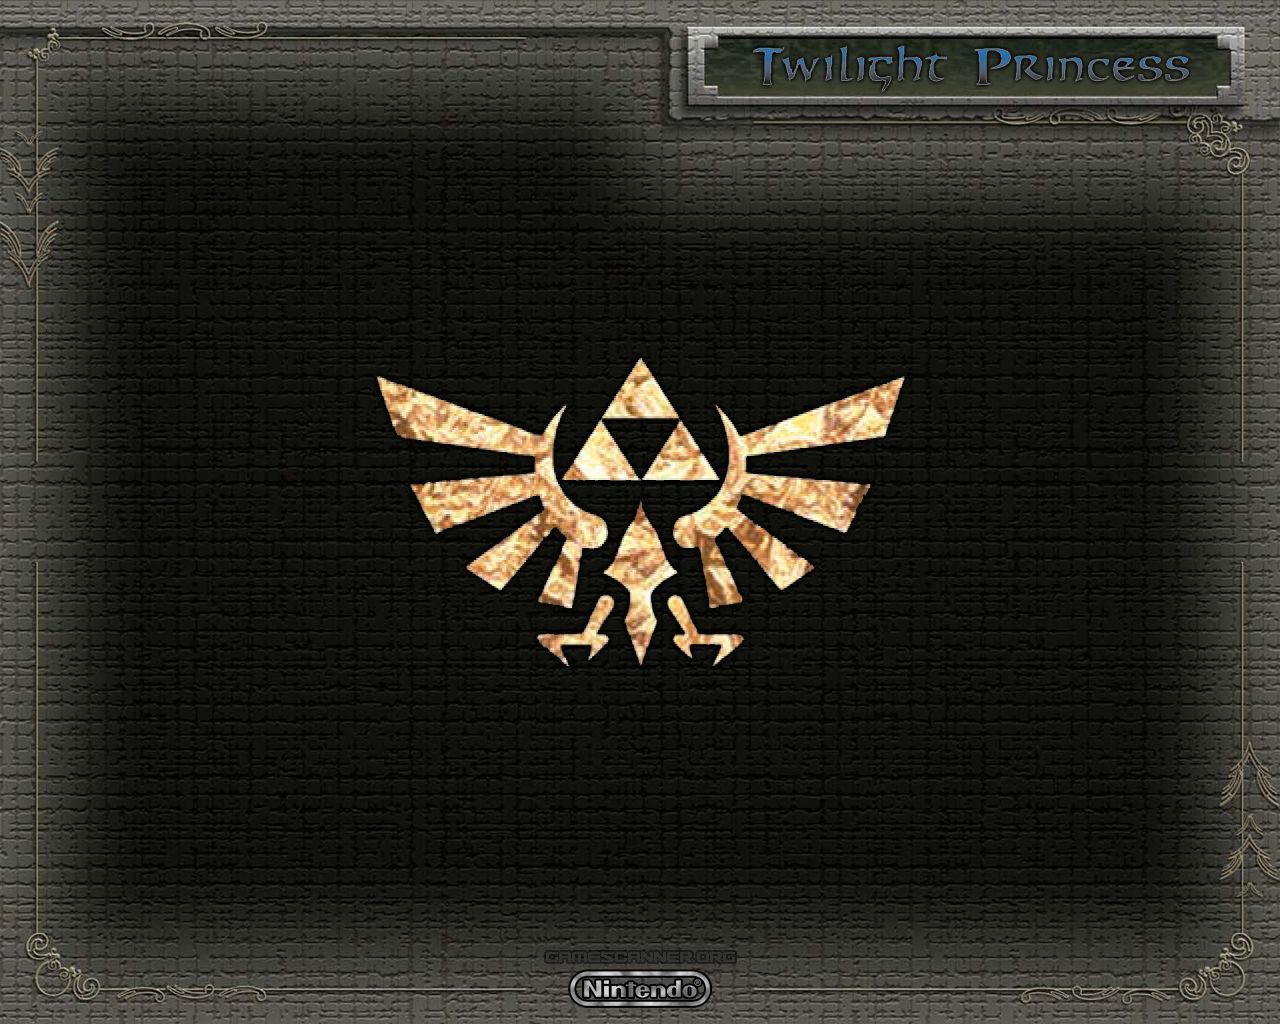 Legend of Zelda Wallpaper - The Legend of Zelda Wallpaper (5445277 ...